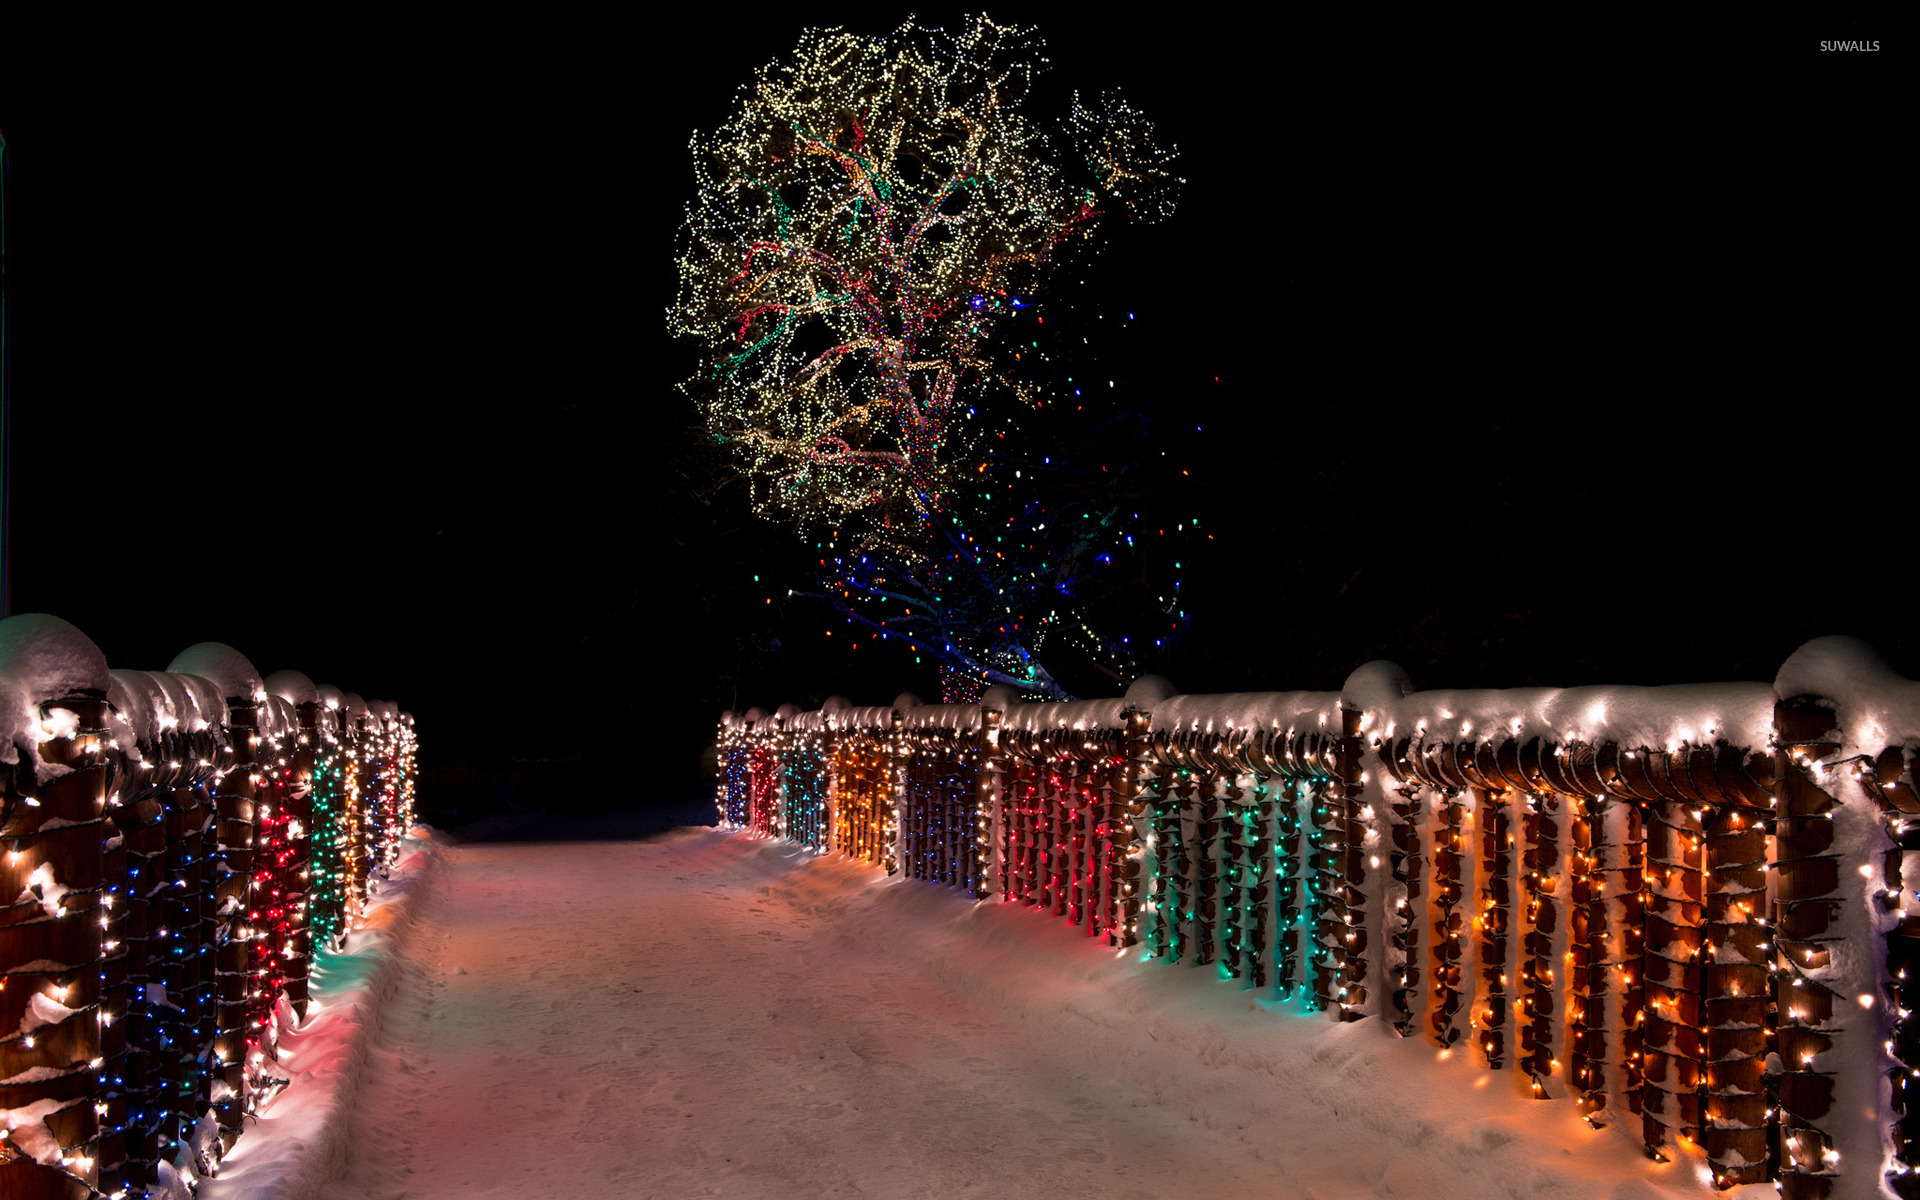 Christmas Lights Snow Wallpapers